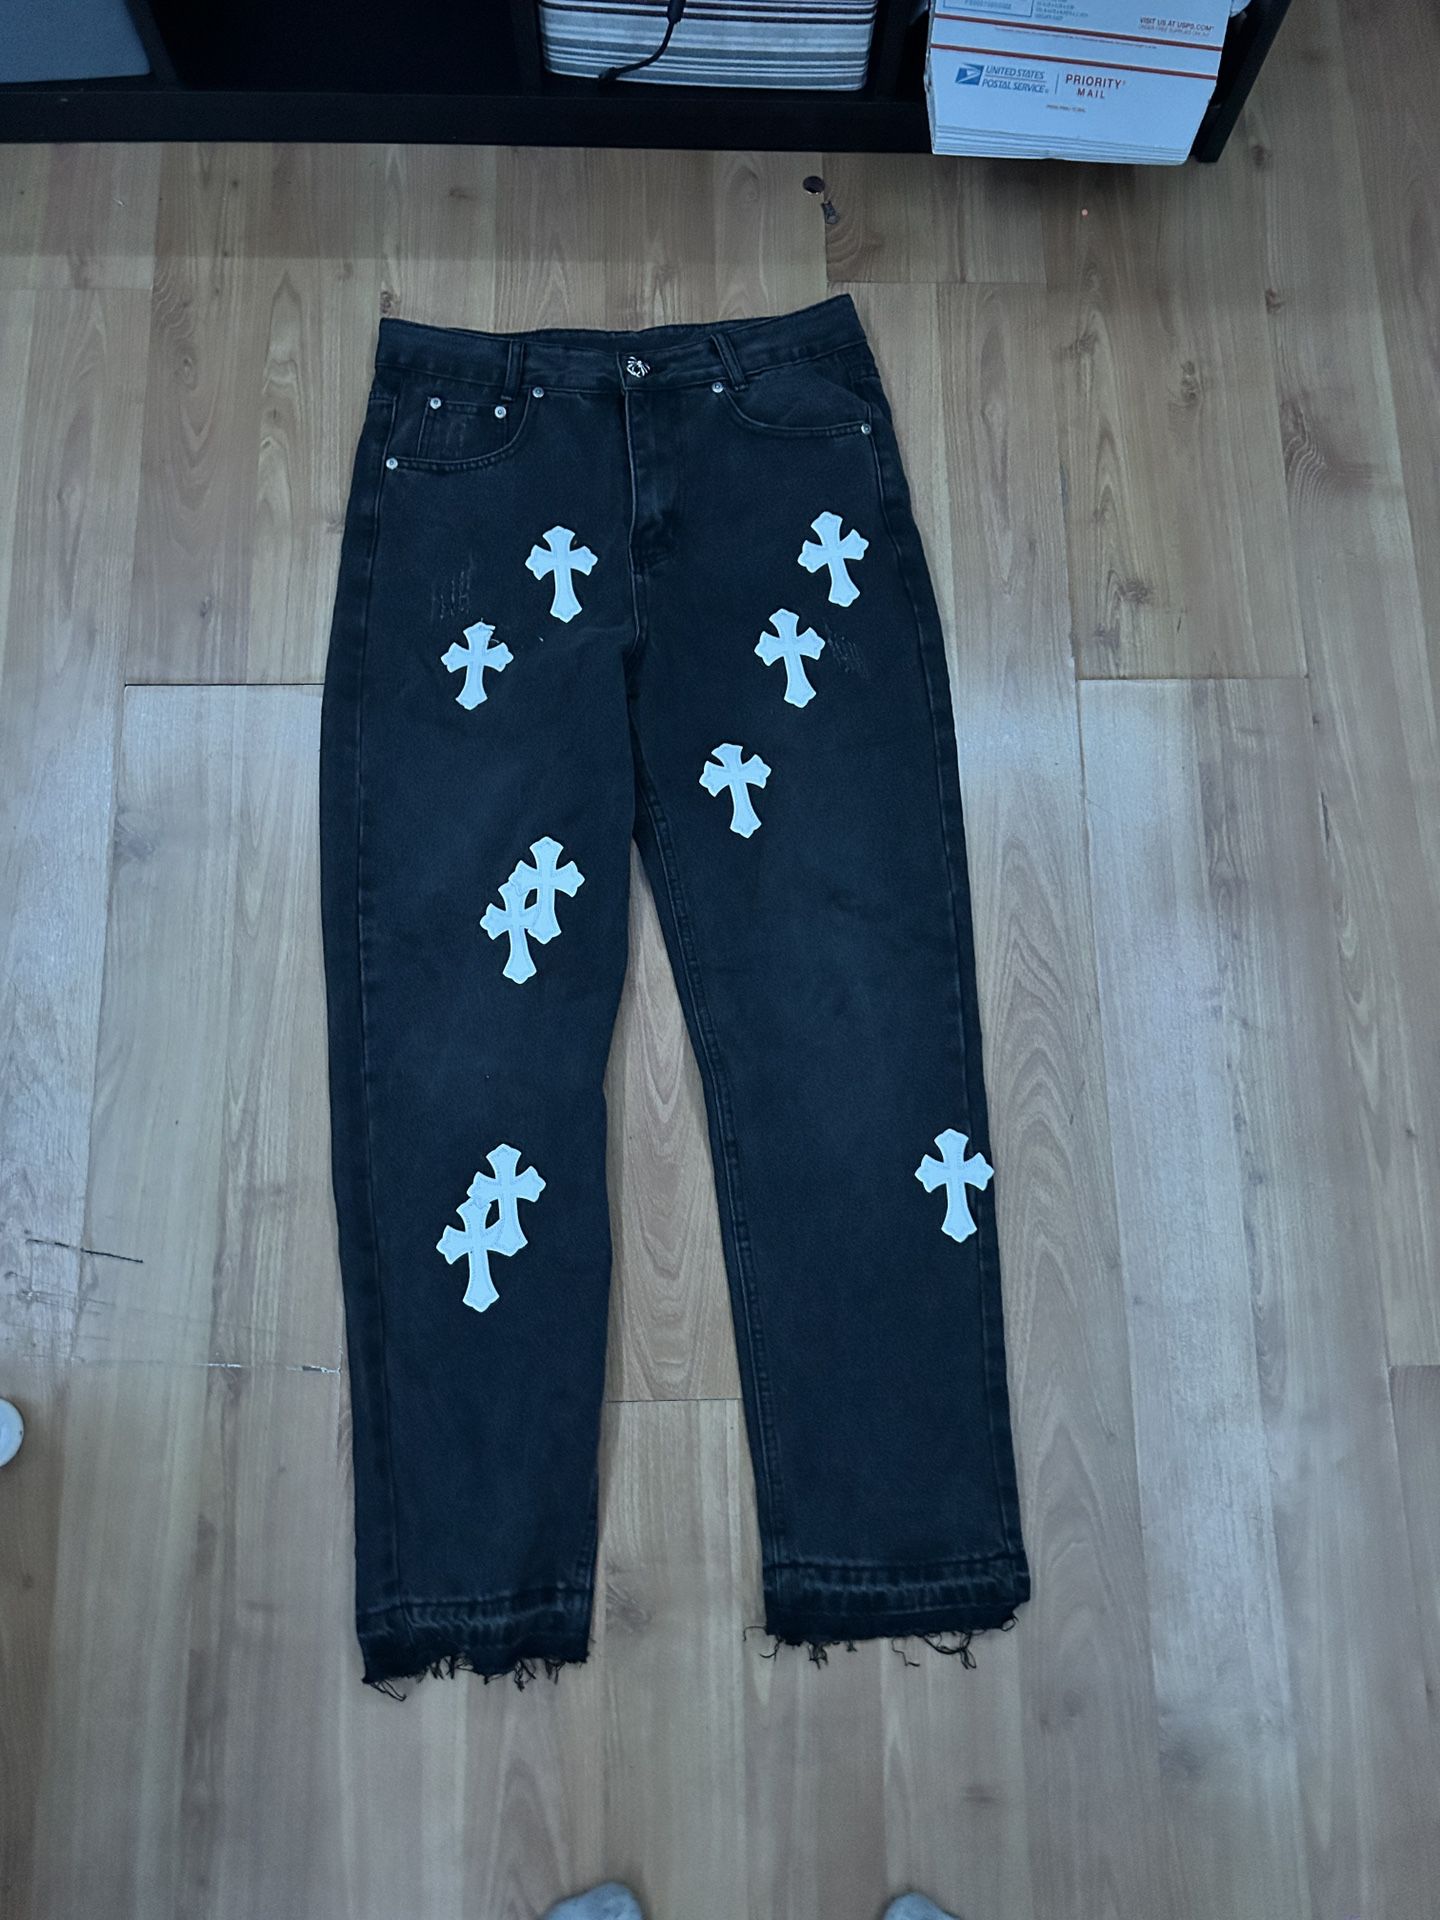 550 levis X Chrome heart jeans